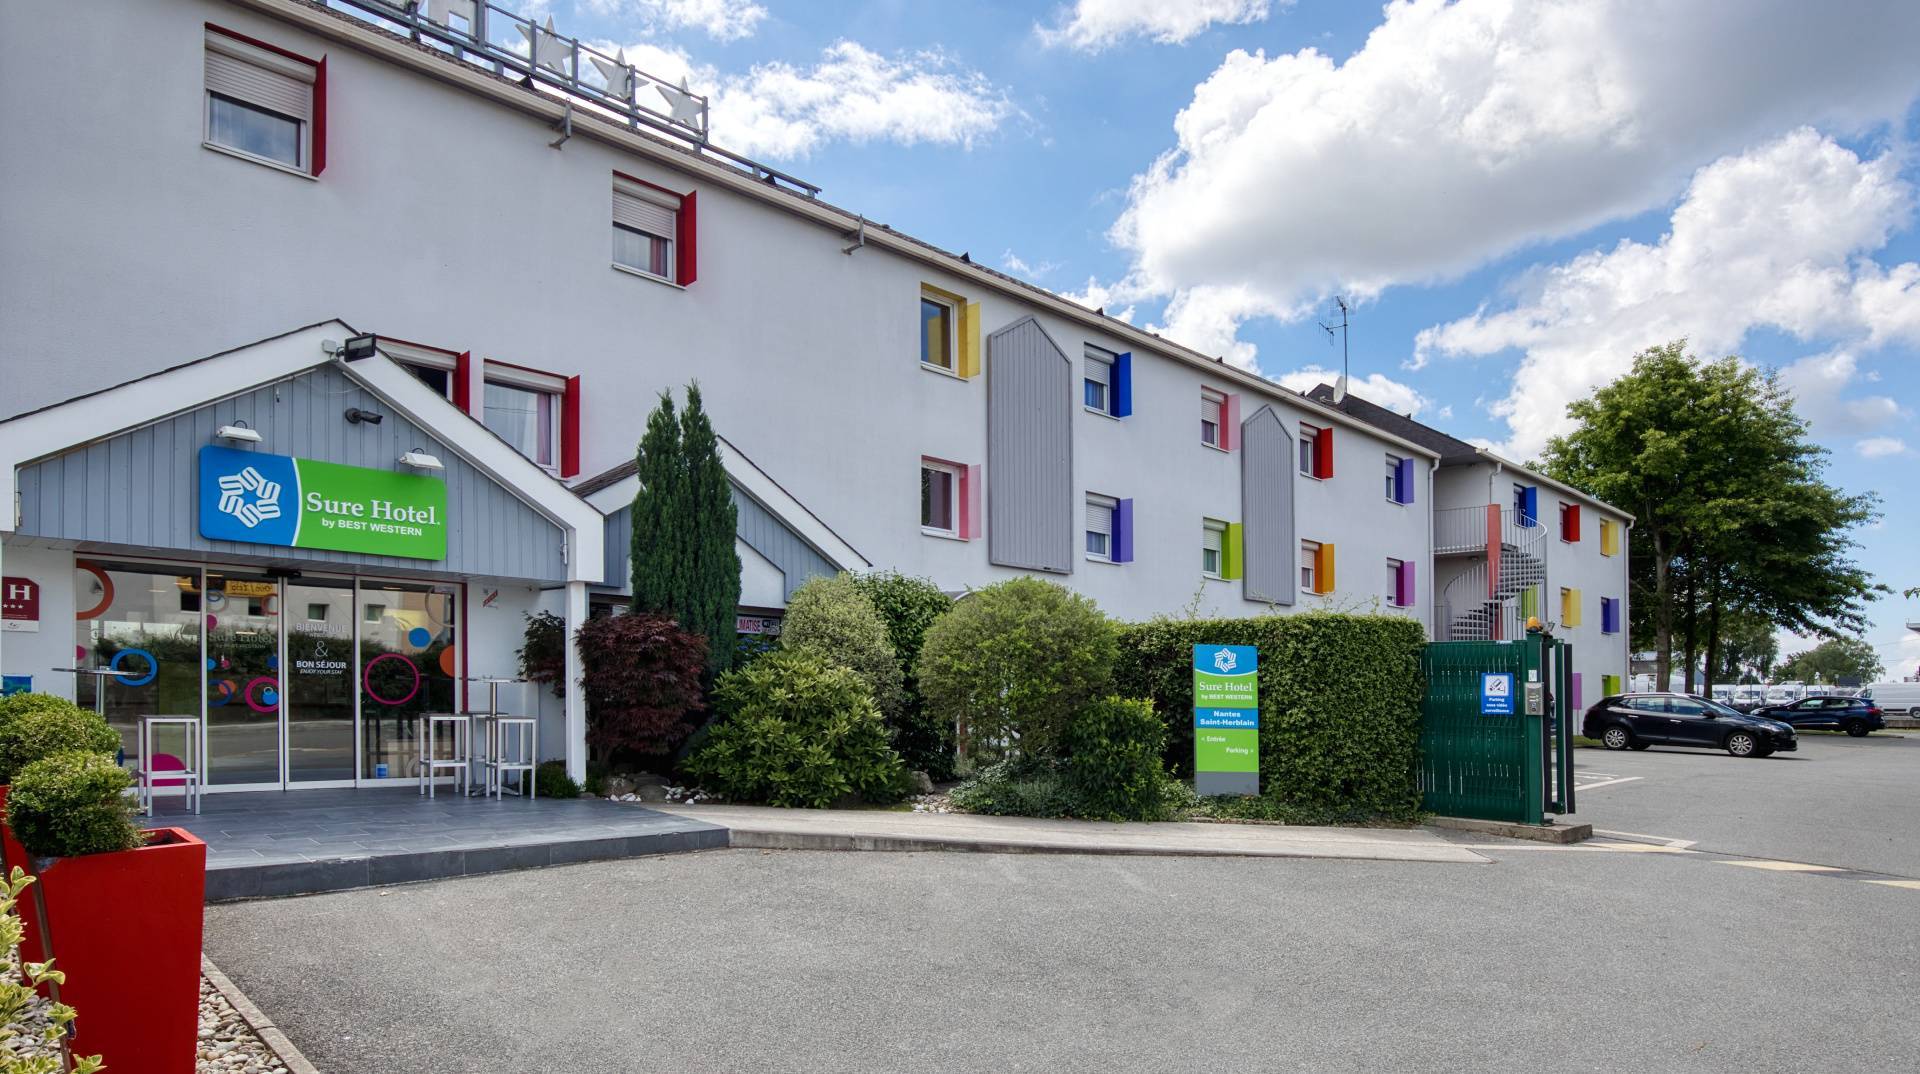 Hôtel avec parking privé | Sure Hôtel, hôtel à Saint-Herblain près du Zénith de Nantes